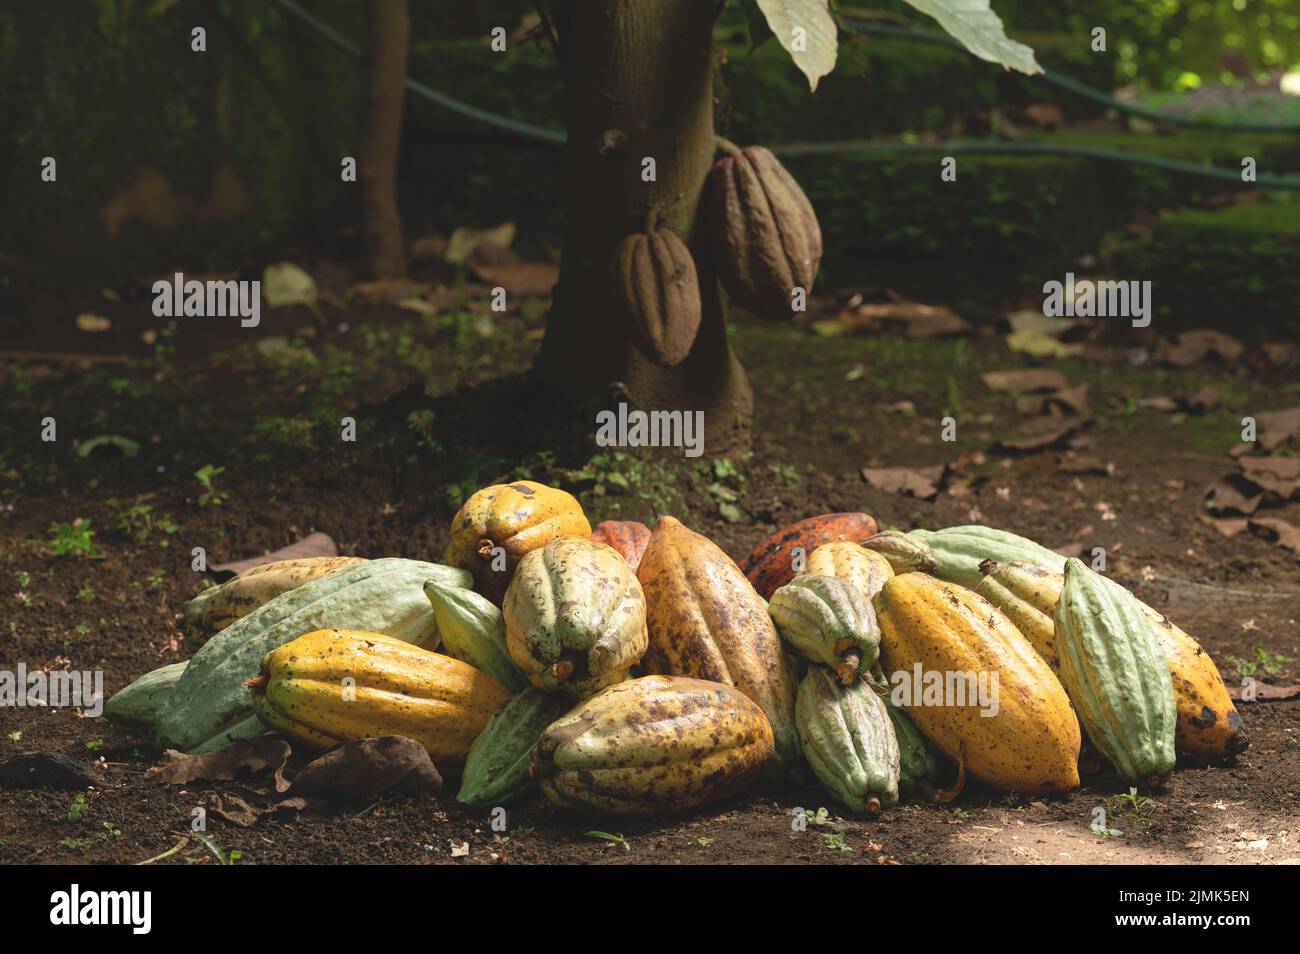 Pila de vainas de cacao maduras en el suelo debajo de la planta arbórea Foto de stock